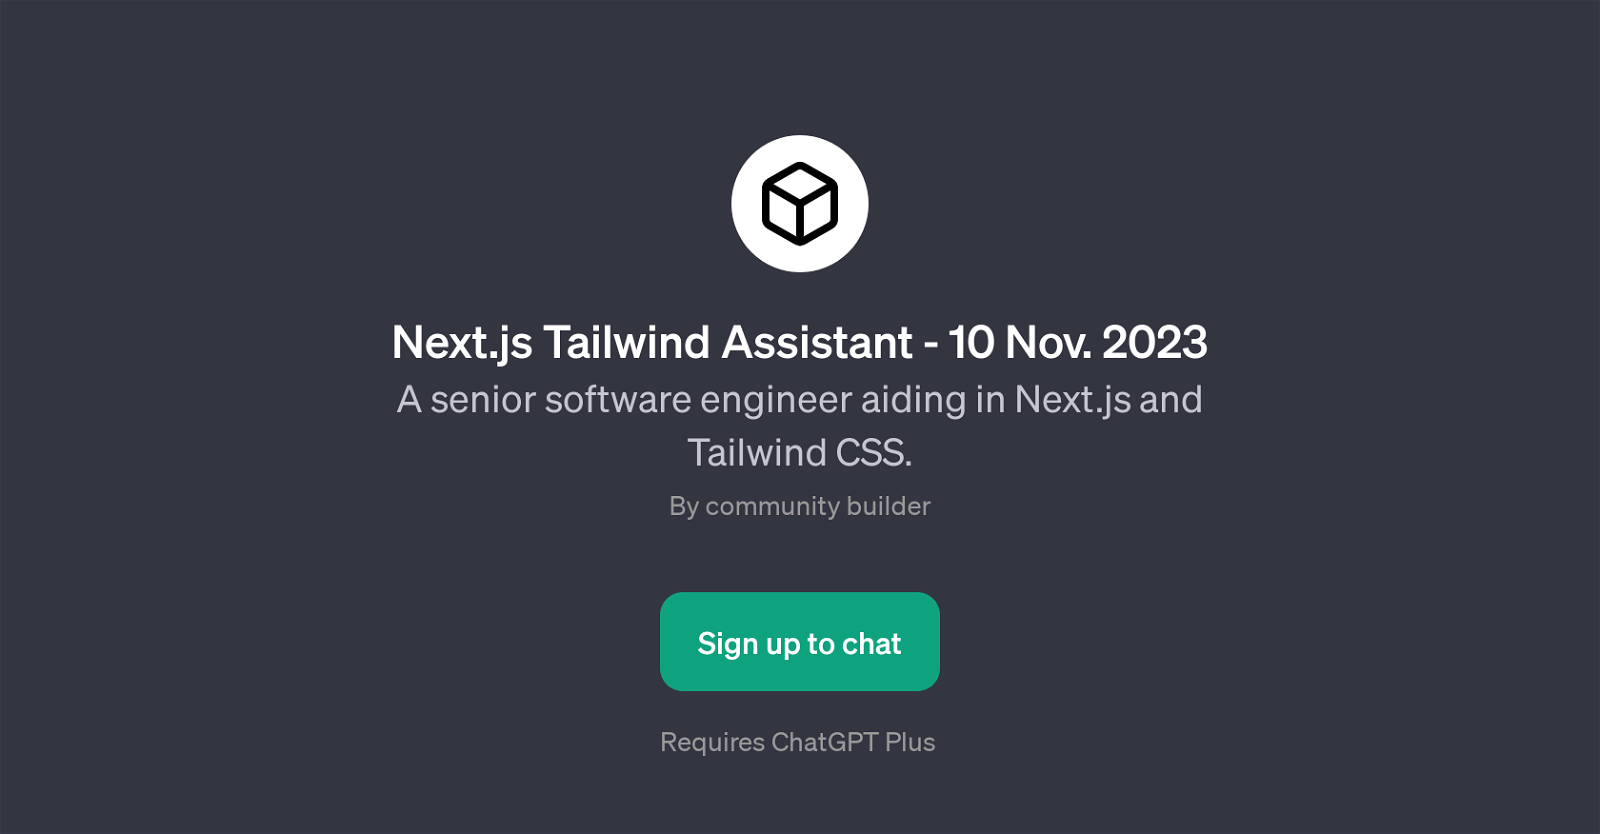 Next.js Tailwind Assistant website